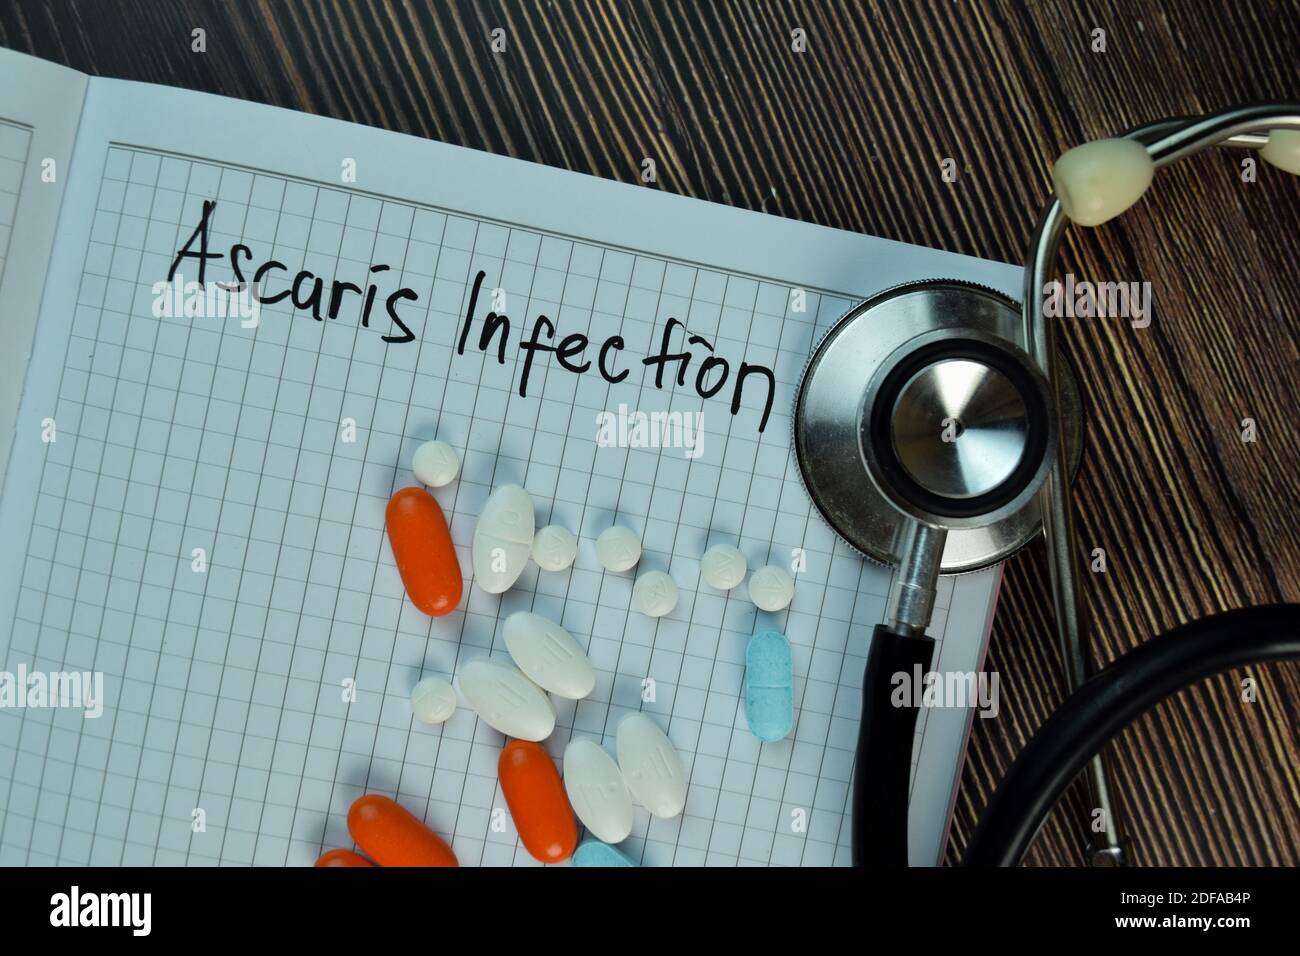 Ascaris Infektion Schreiben Sie auf ein Buch isoliert auf Holztisch. Medizinisches oder medizinisches Konzept Stockfoto